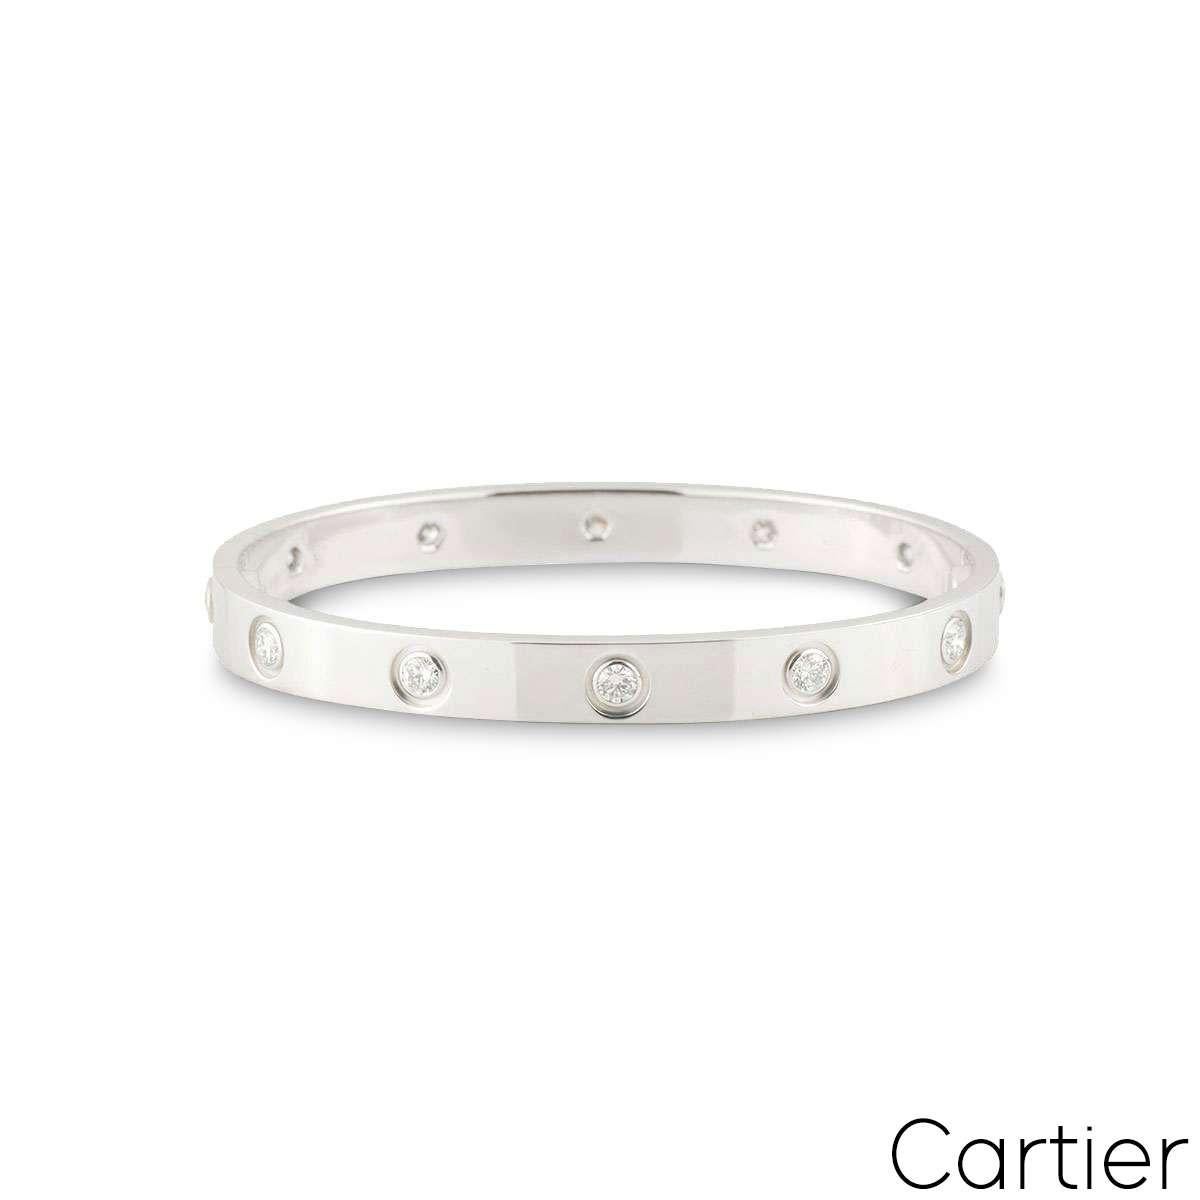 Un bracelet Cartier en or blanc 18 carats plein de diamants de la collection Love. Le bracelet est serti de 10 diamants ronds de taille brillant circulant sur le bord extérieur dans un serti rubover pour un total de 0,96ct. Le bracelet est de taille